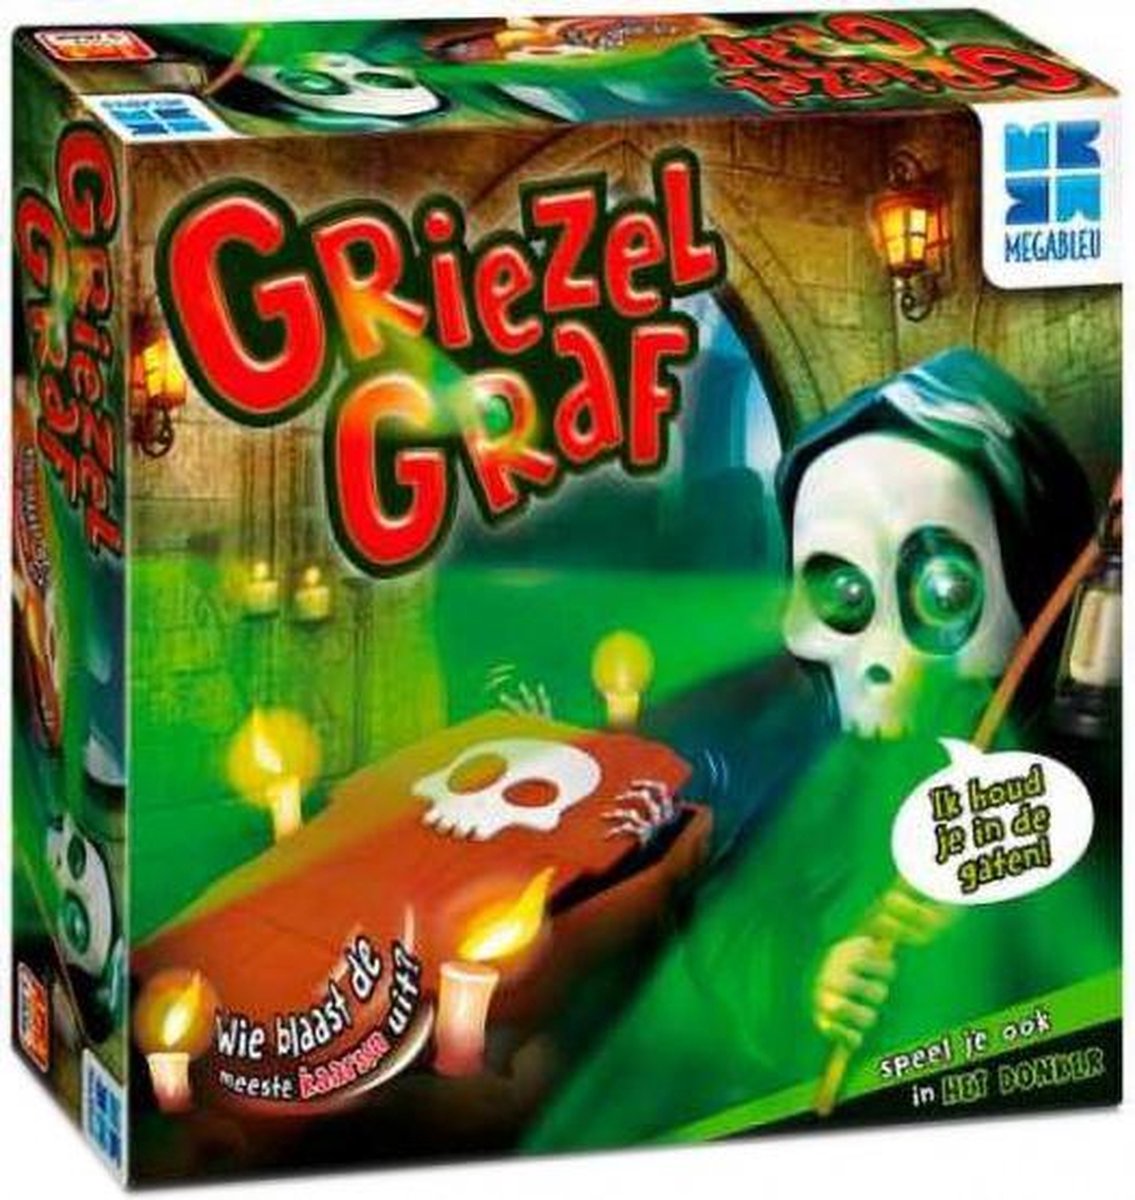 gezelschapsspel Griezel Graf (NL)